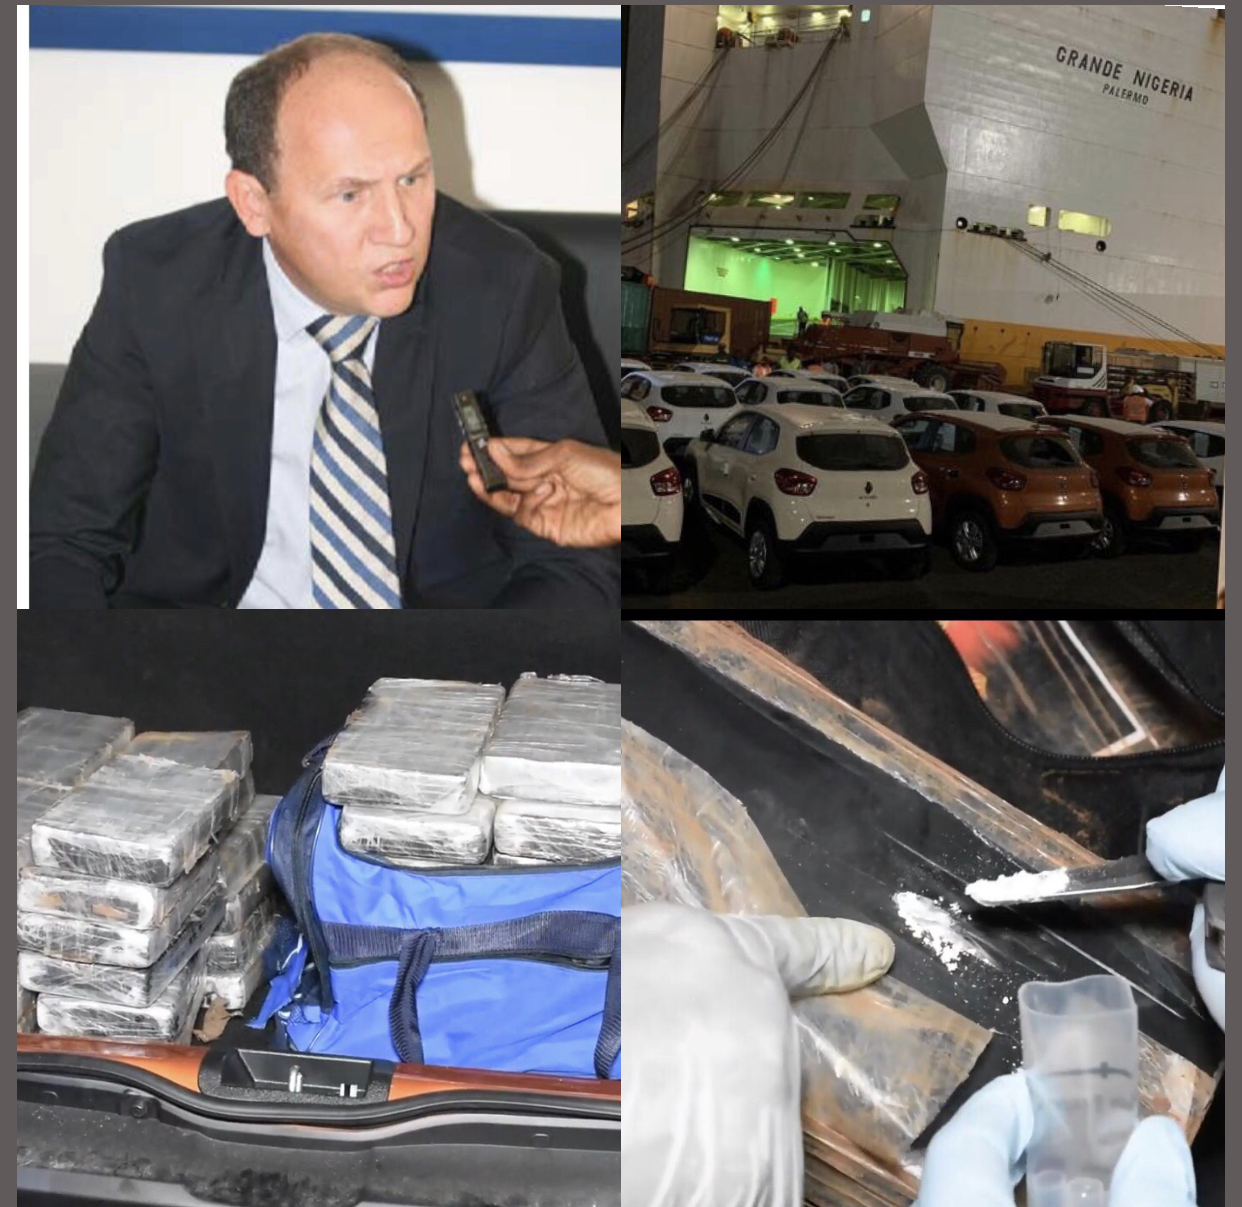 Suite et pas fin de la saisie de drogue au port : Le patron de Dakar Terminal cueilli, la sécurité du port renforcée, le procureur s'implique.